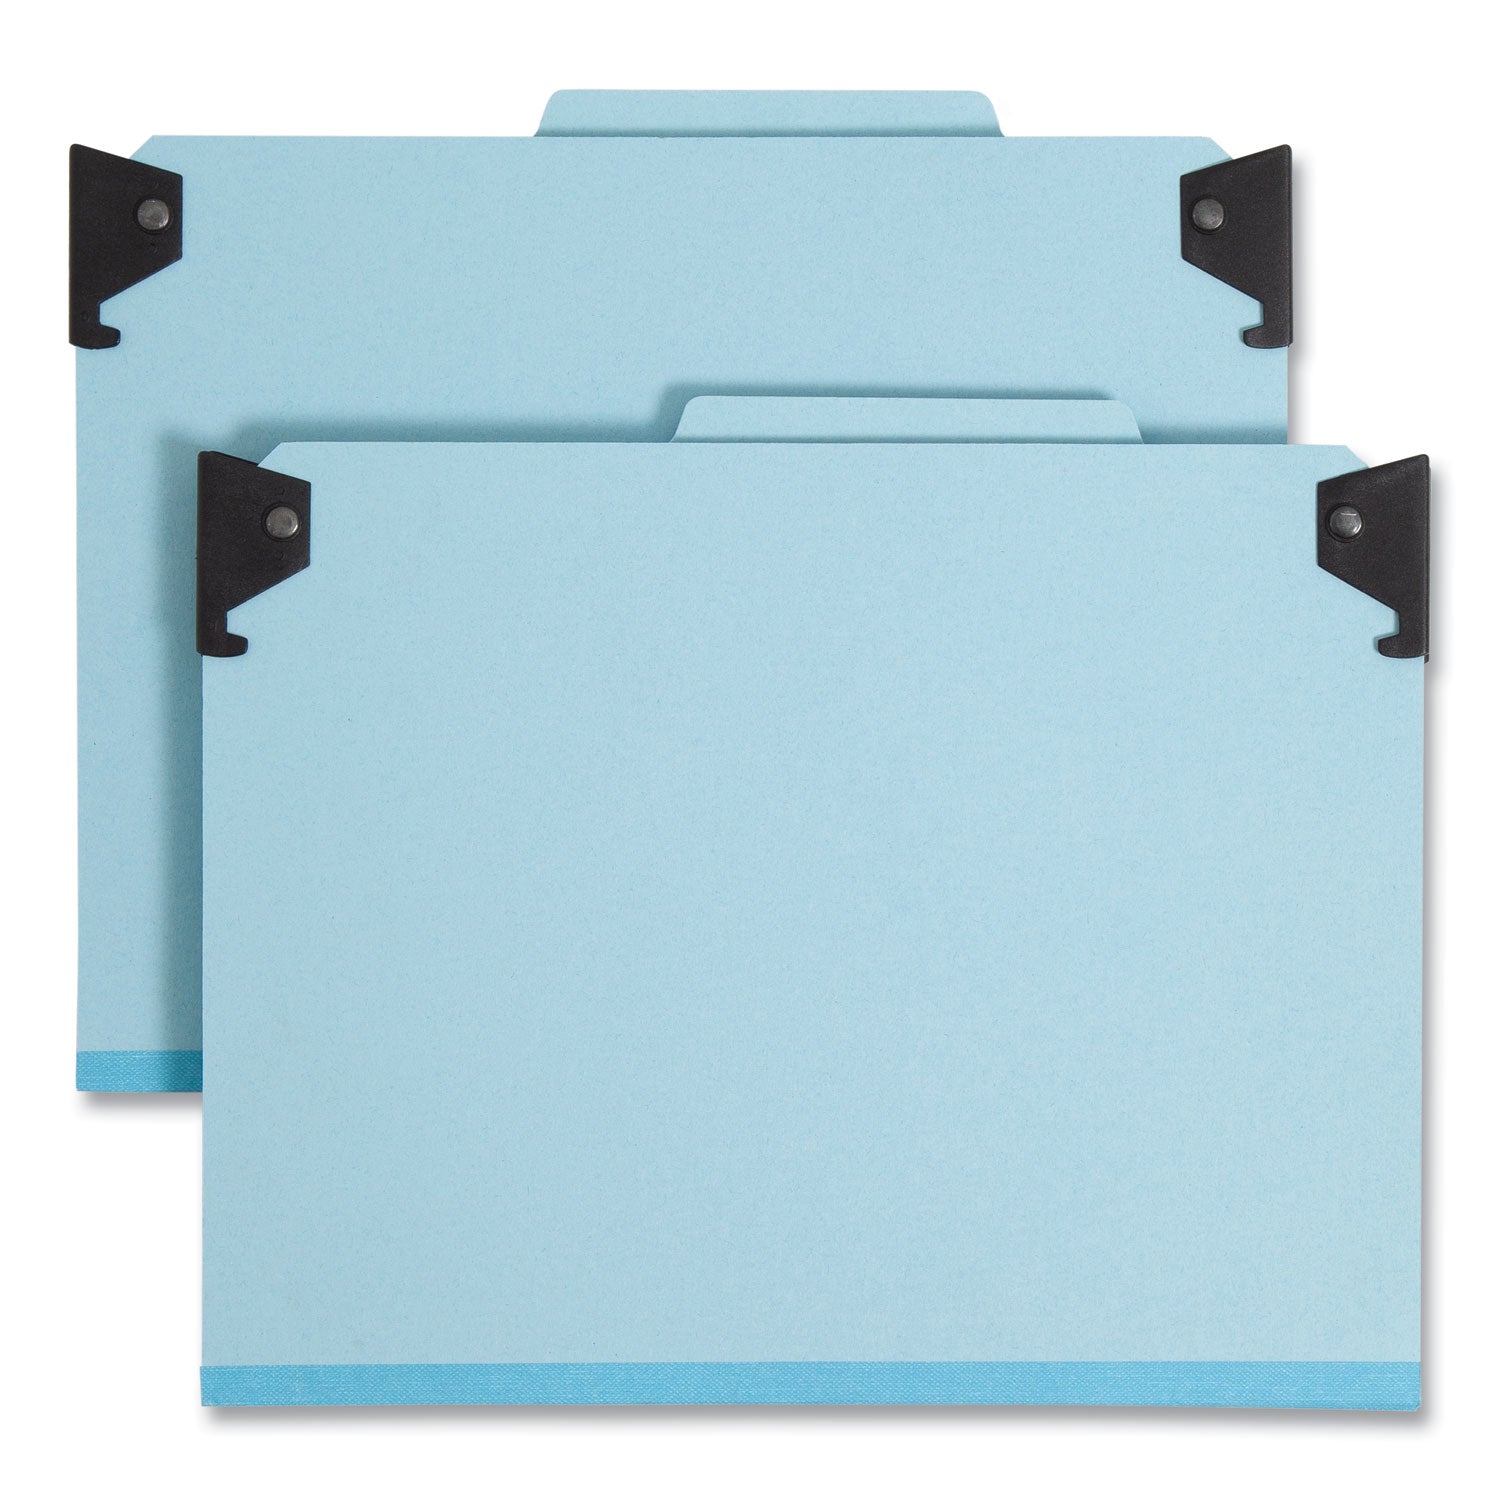 FasTab Hanging Pressboard Classification Folders, 1 Divider, Letter Size, Blue - 